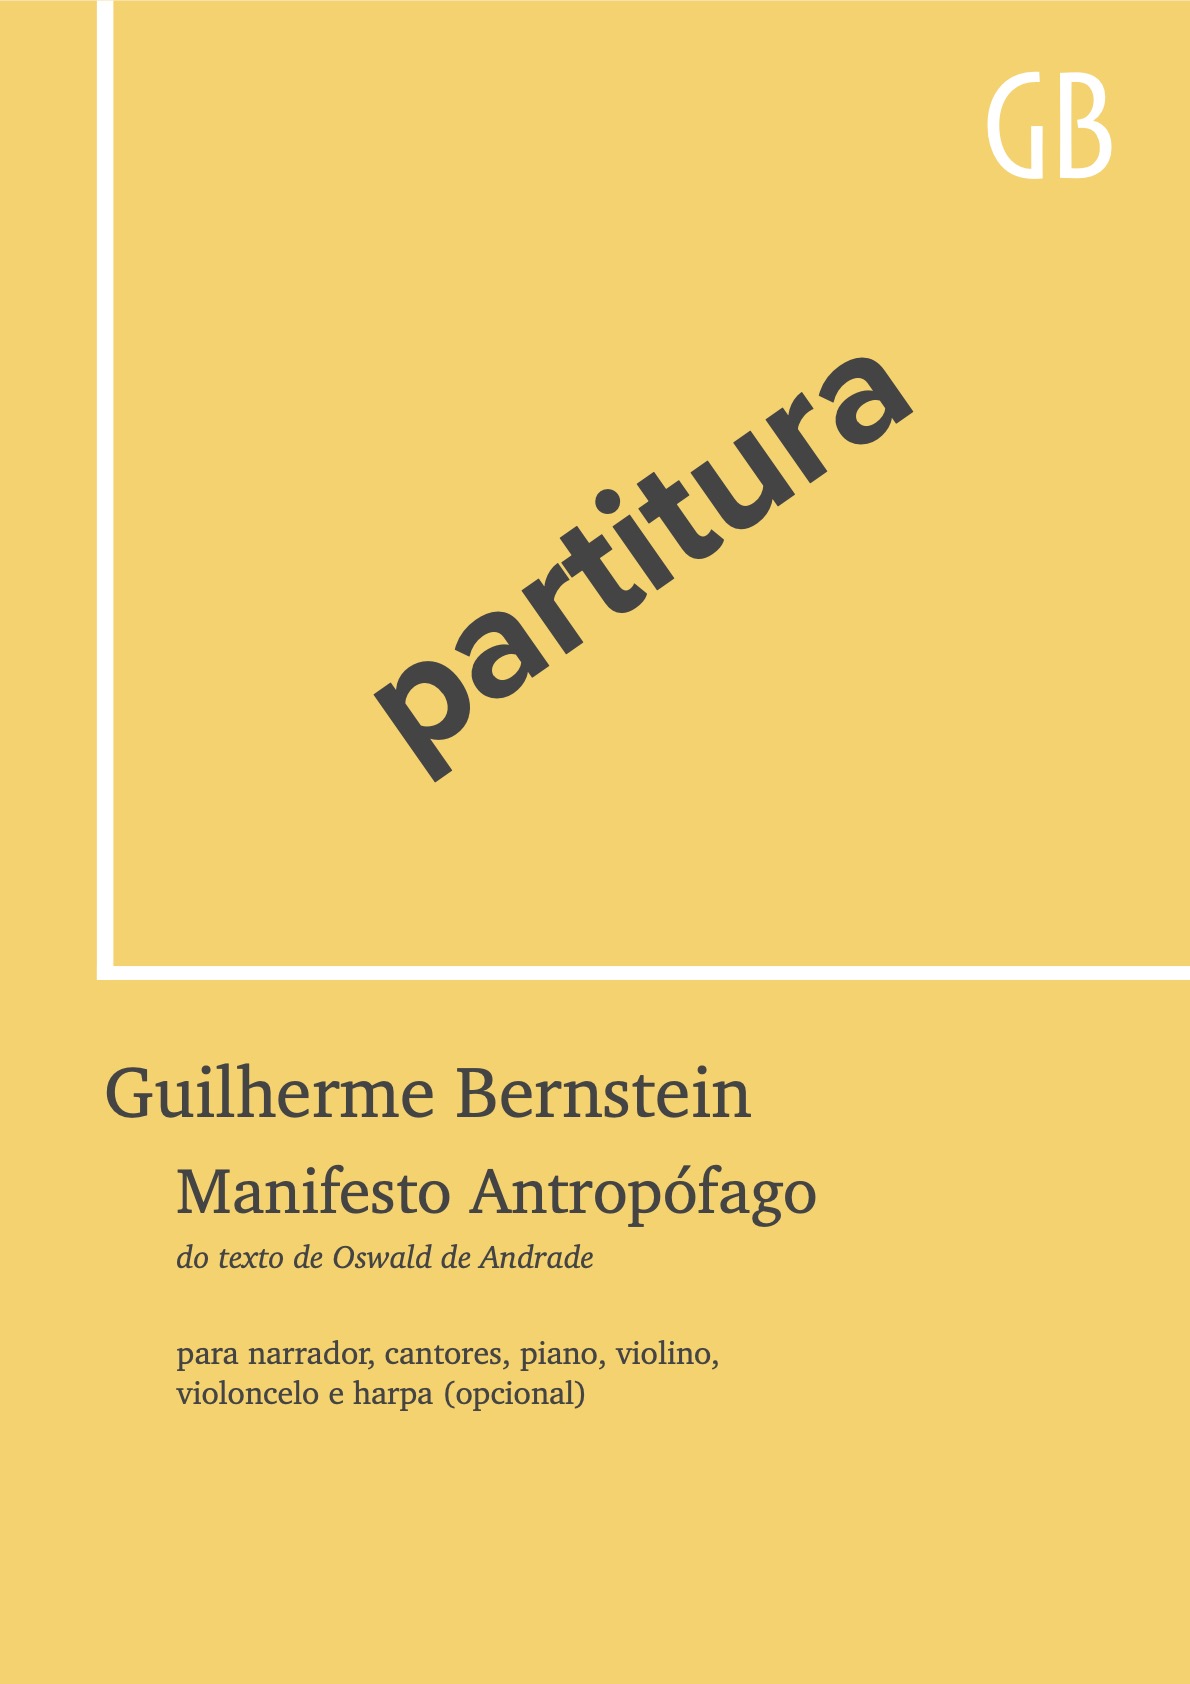 Manifesto Antropofágico - sample cover